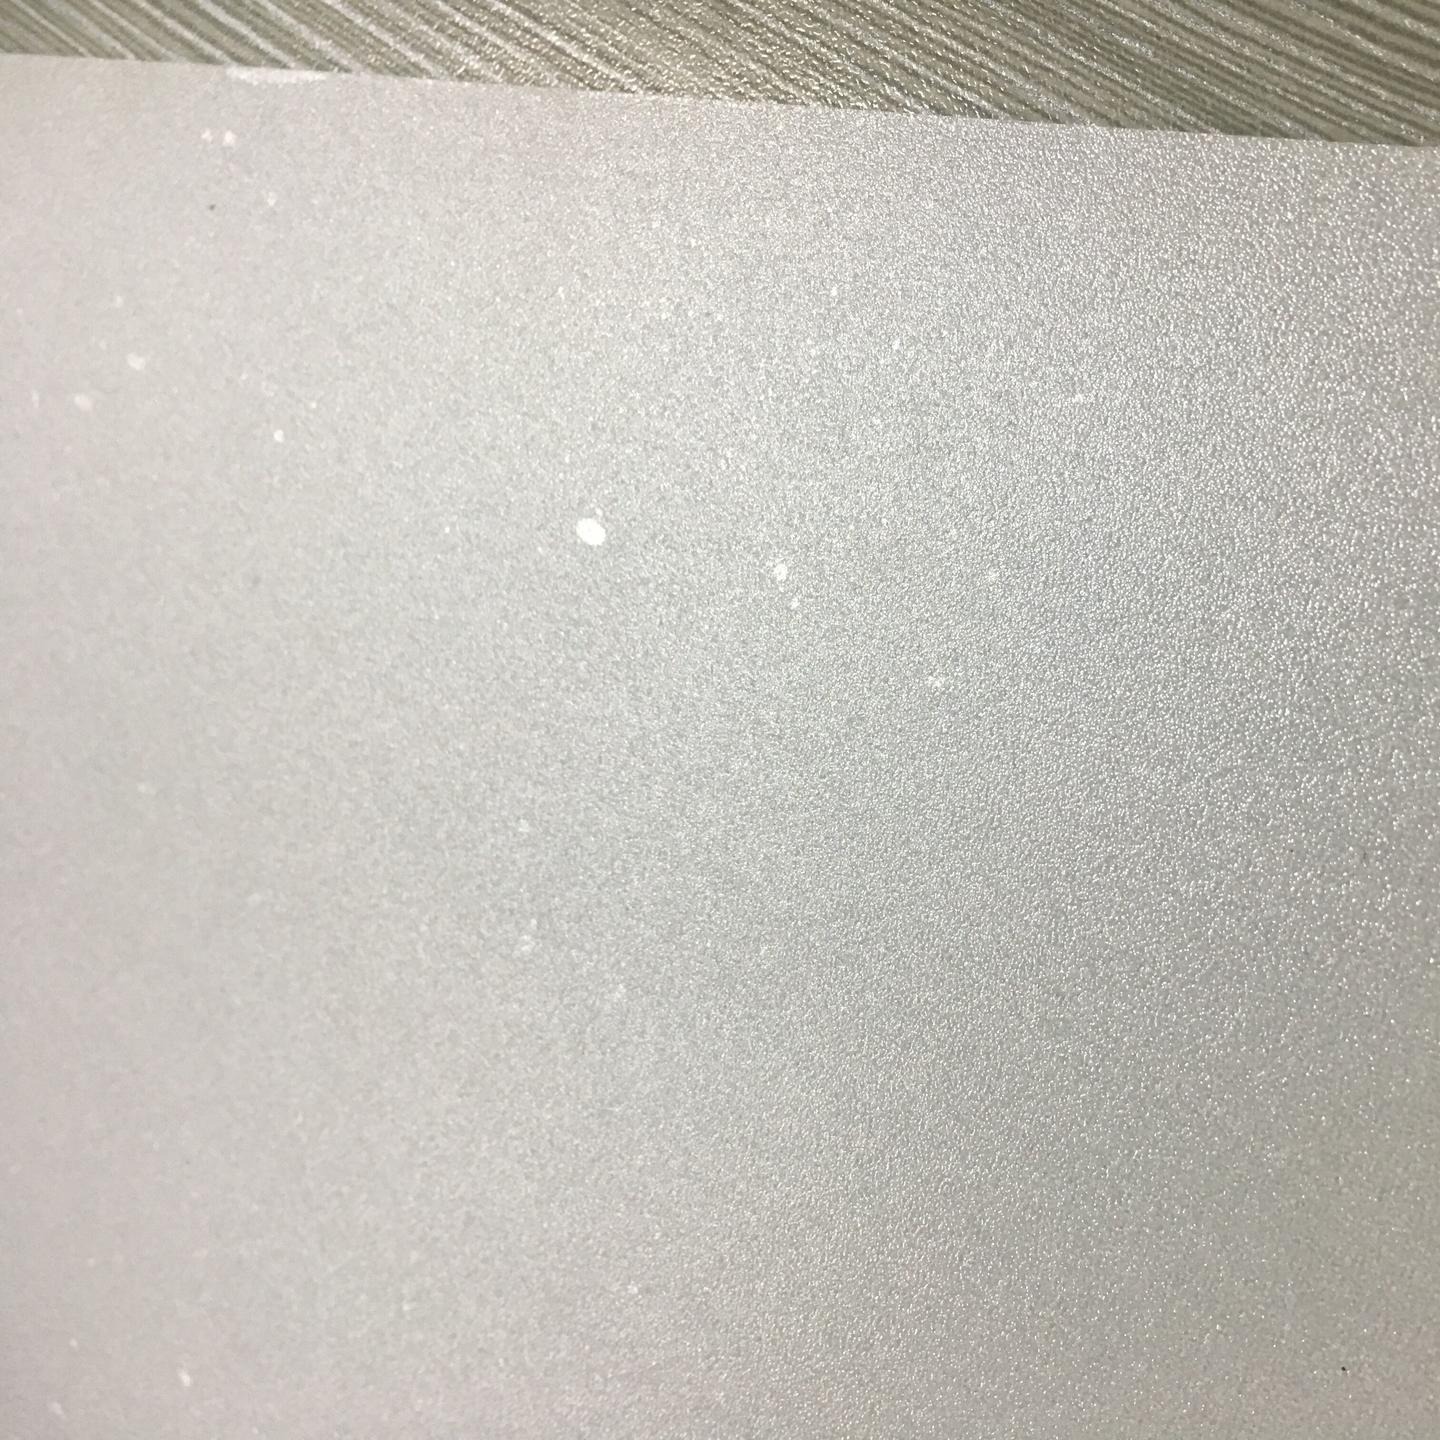 磨砂耐力板  磨砂pc耐力板  磨砂pc板  pc磨砂板  2mm透明磨砂pc耐力板厂家图片